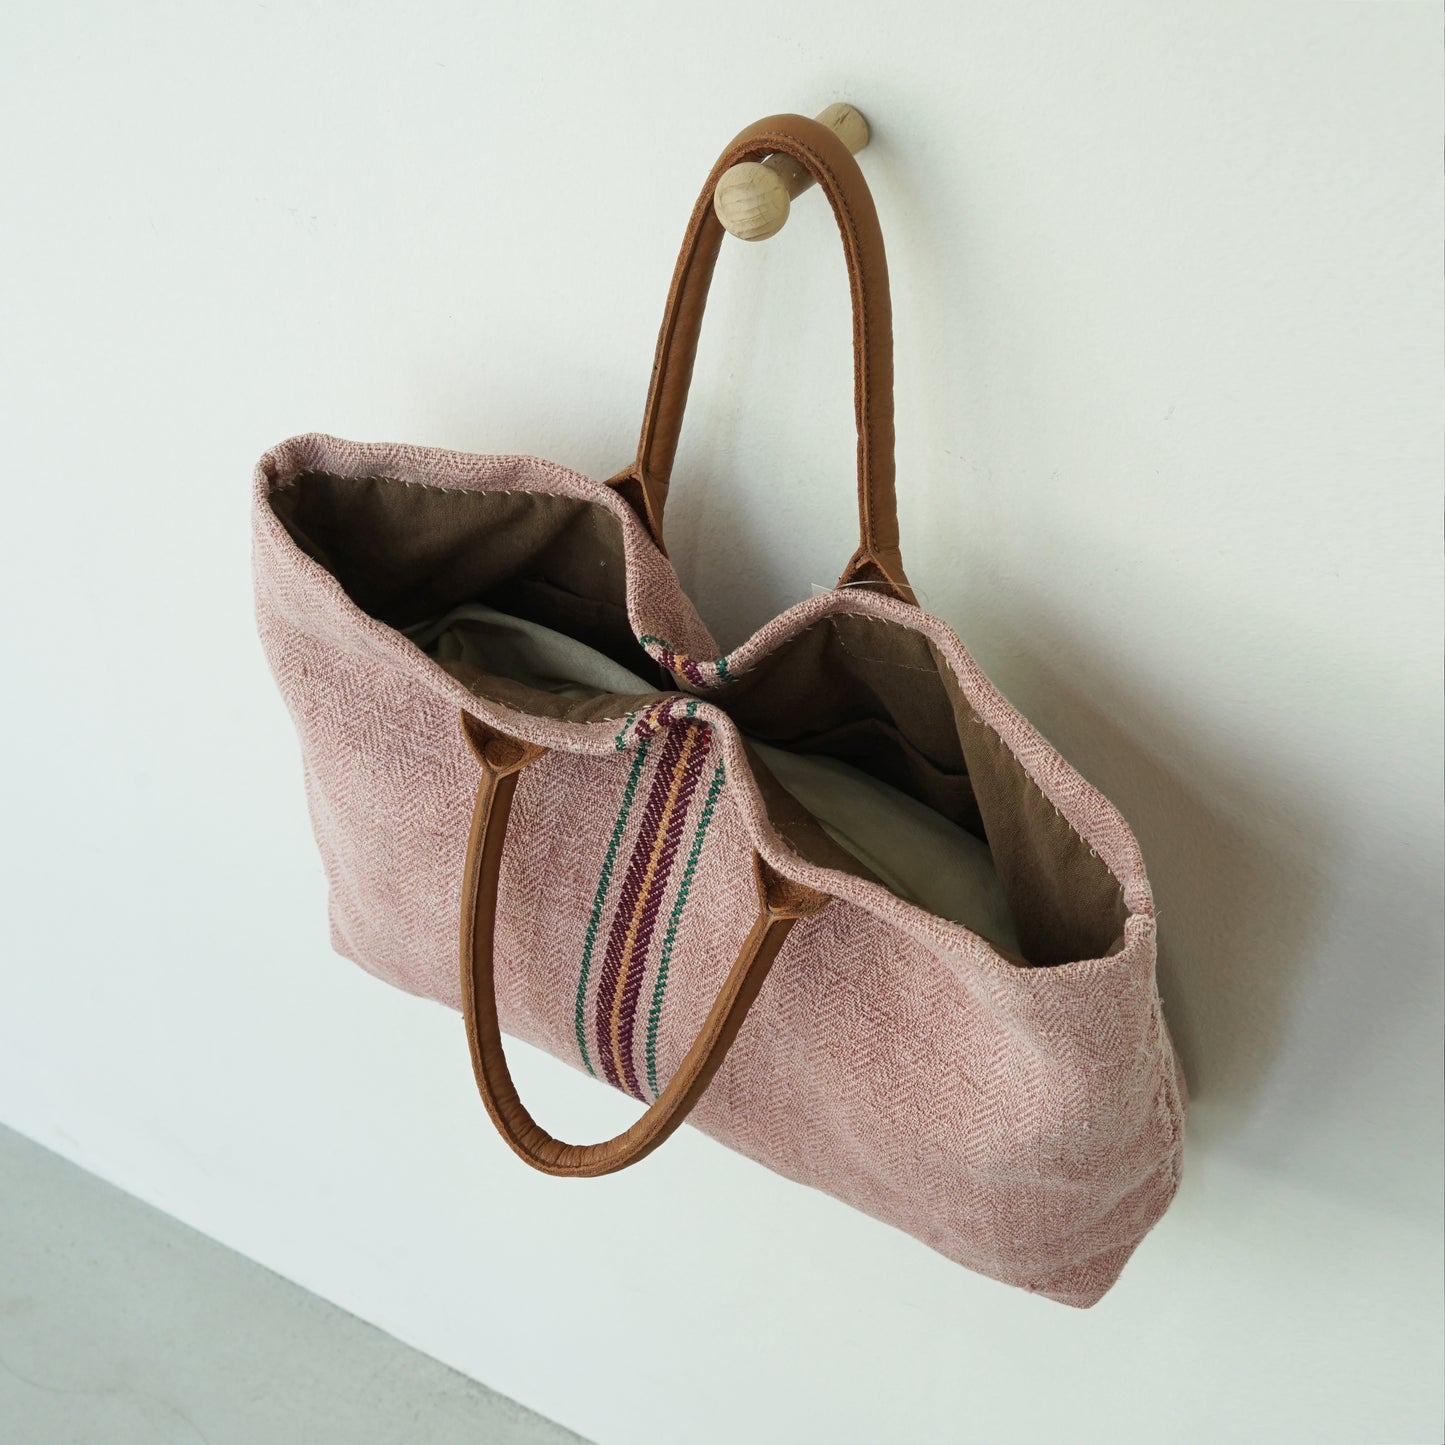 Hemp tote bag - pink